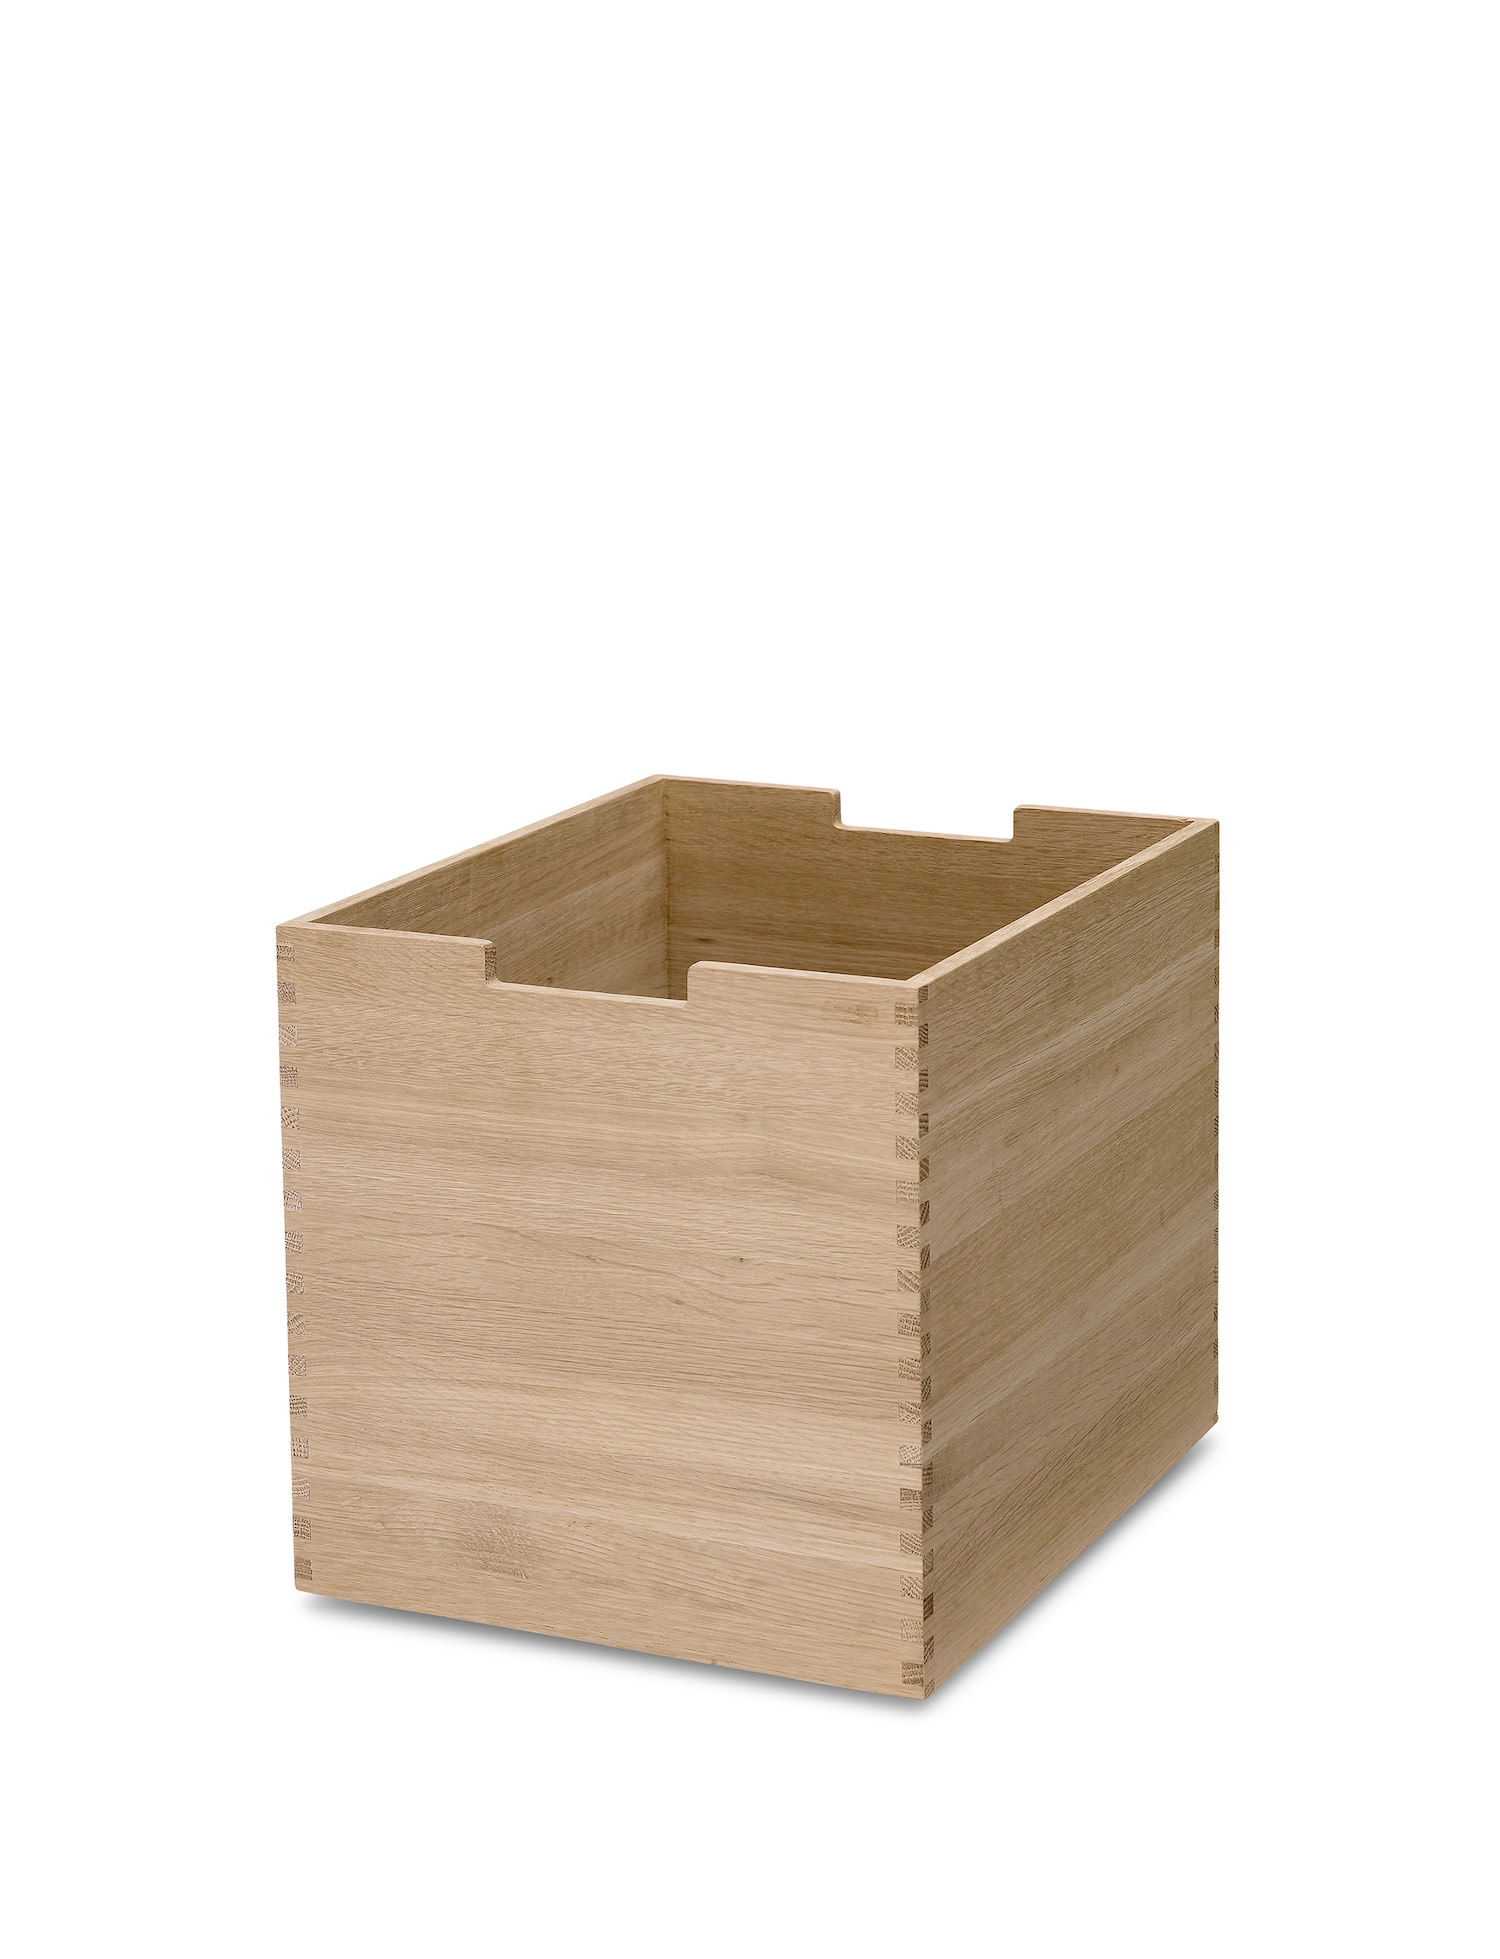 tall wooden box